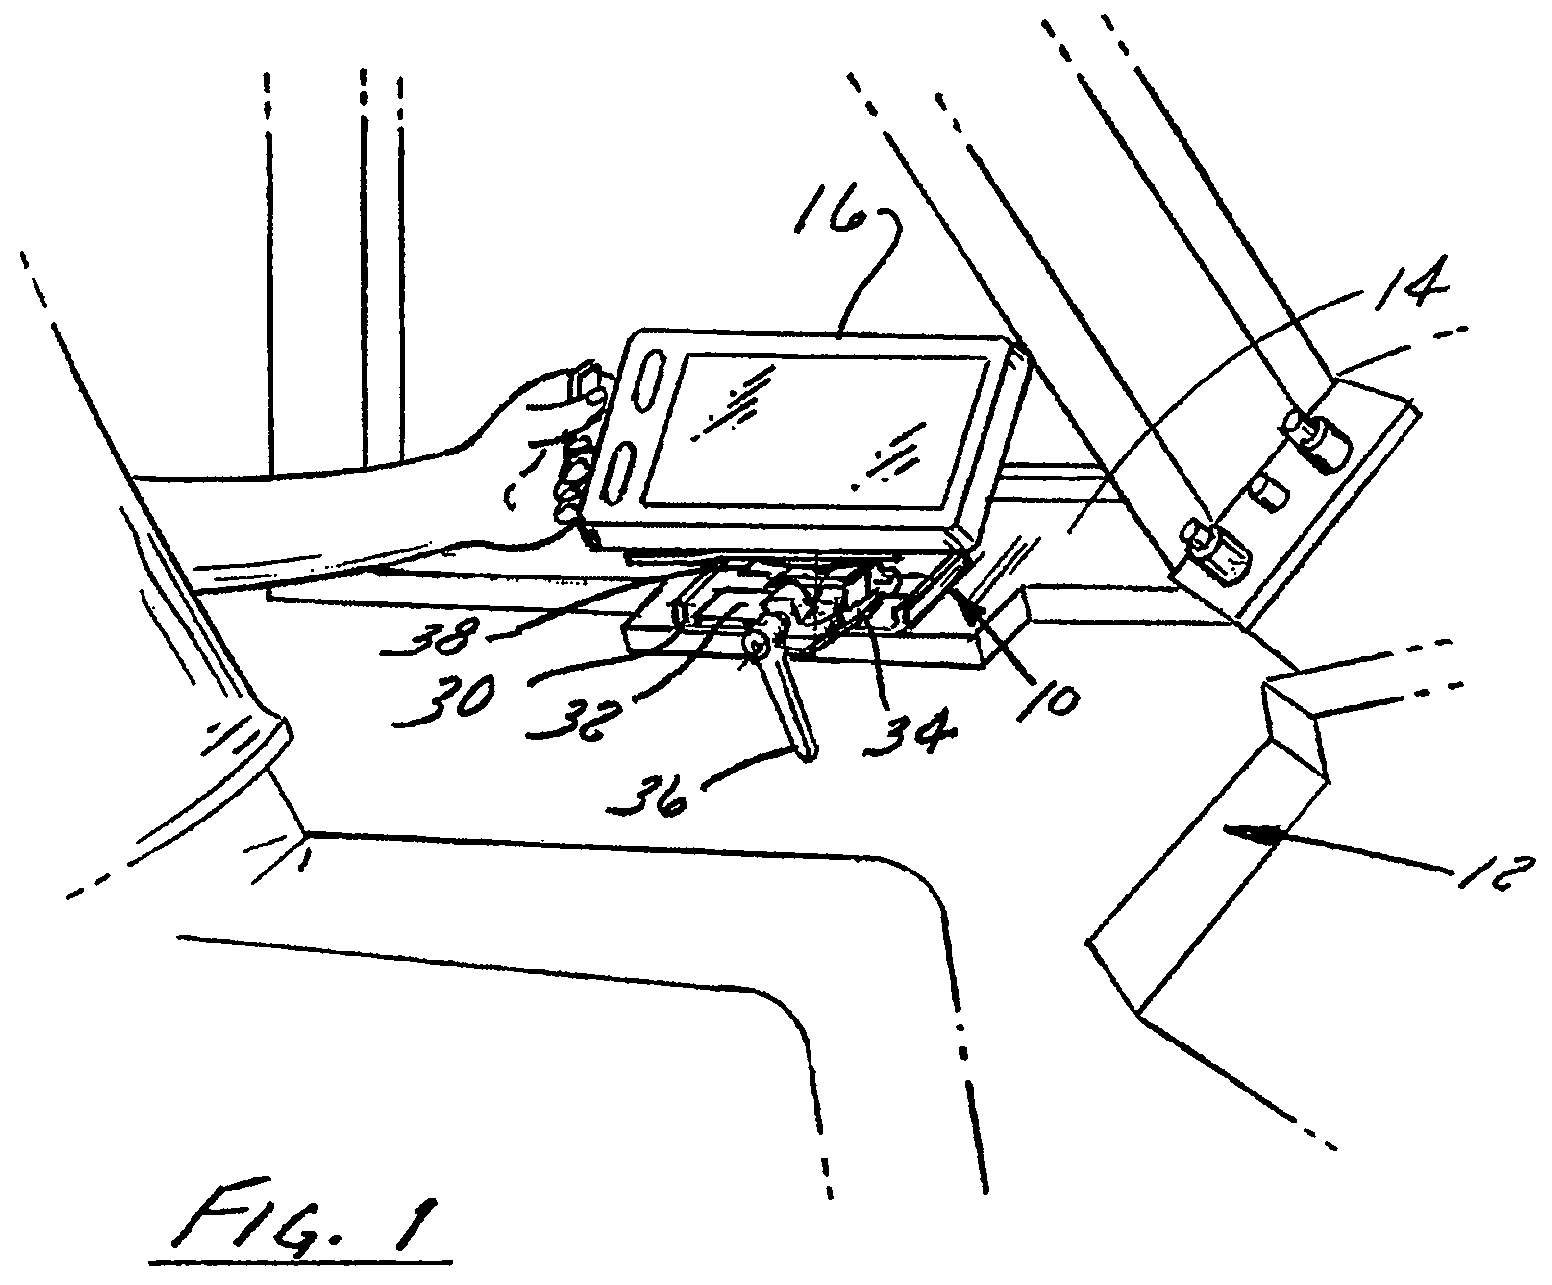 Electronic flight bag mounting bracket